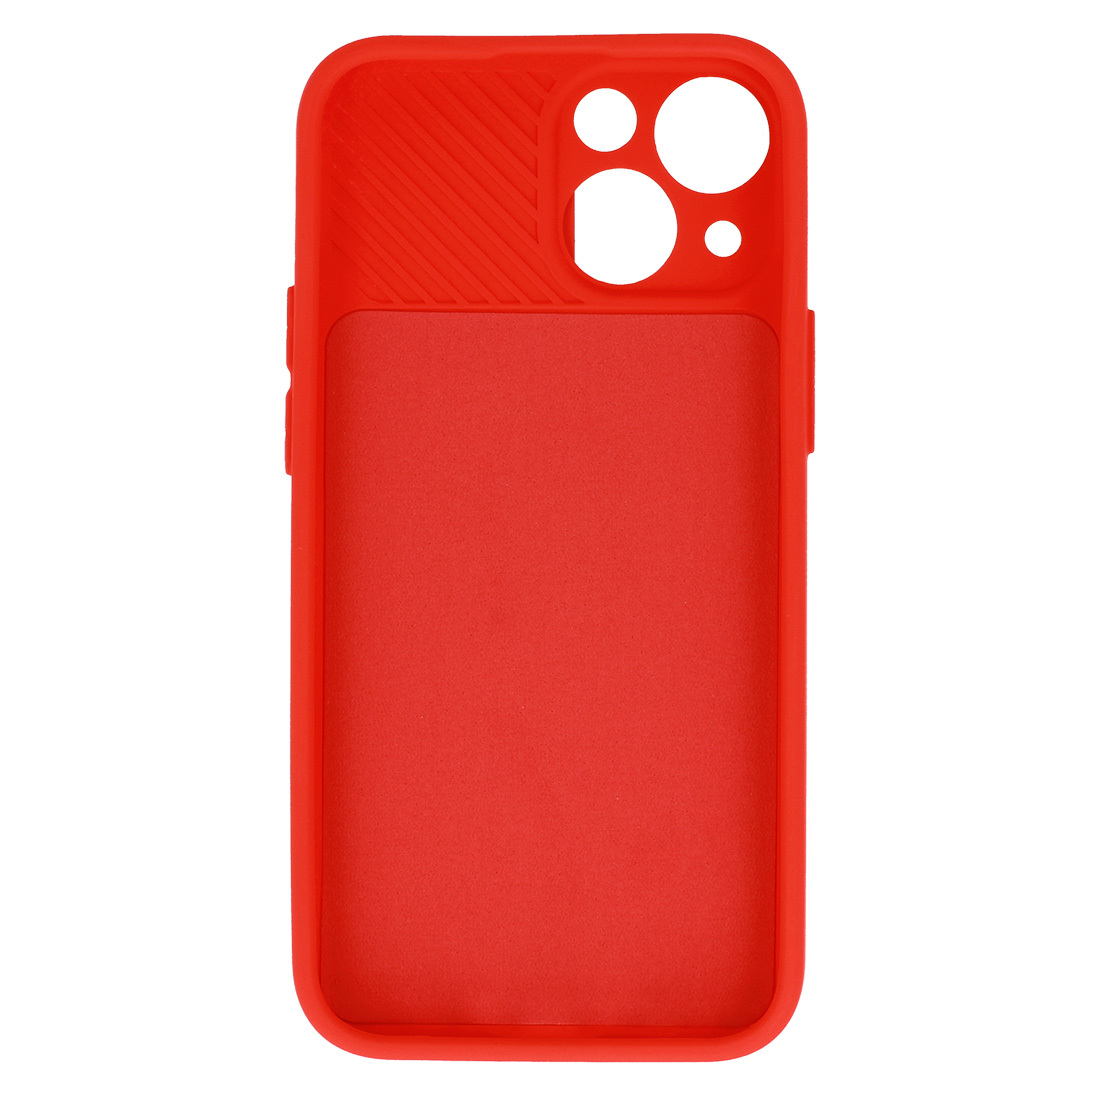 Pokrowiec etui z elastycznego TPU Camshield Soft Case czerwone APPLE iPhone 7 Plus / 5